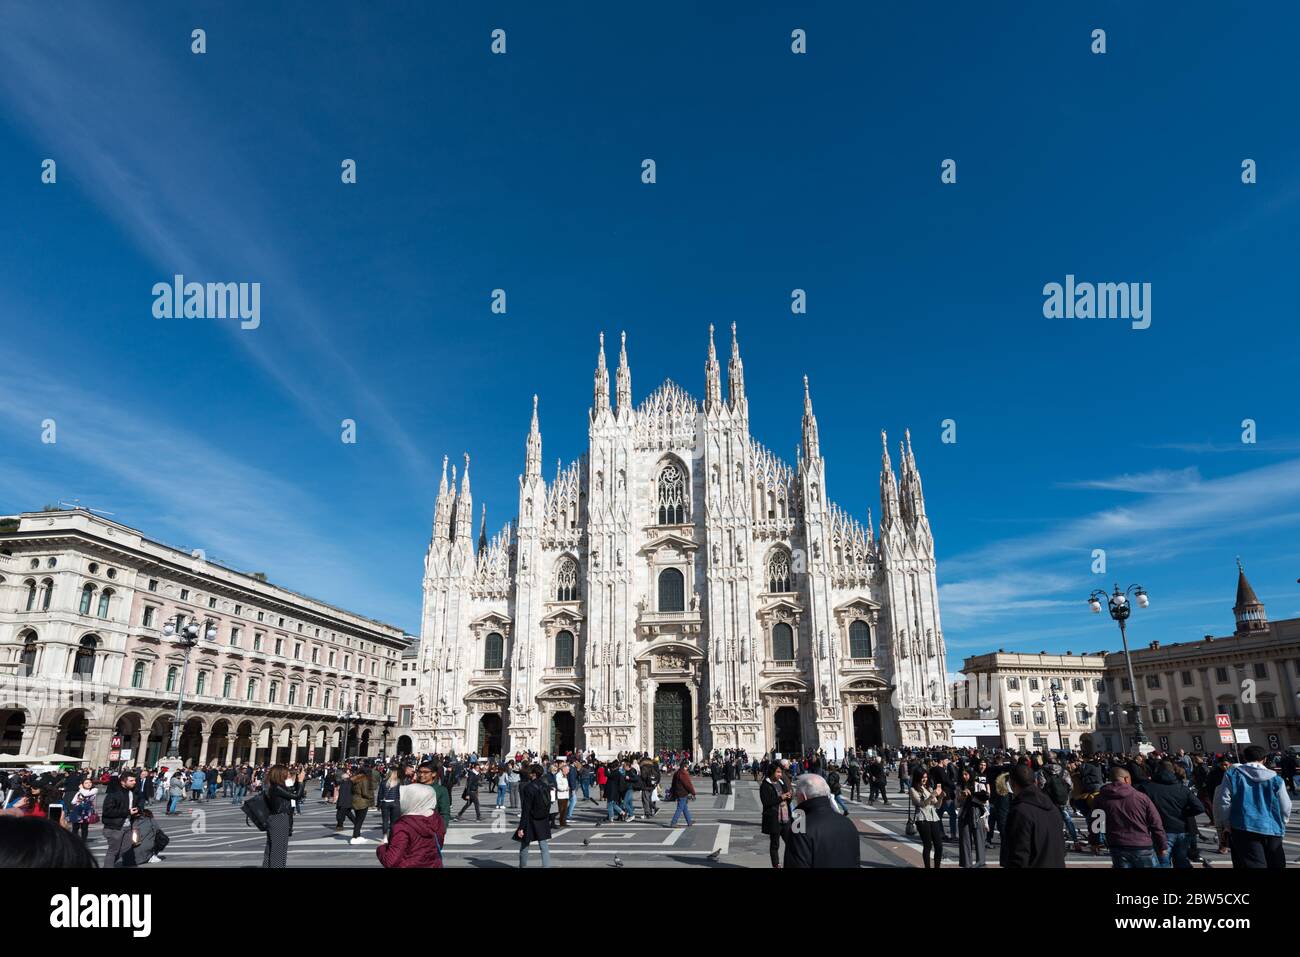 MILÁN, ITALIA - 16, MARZO de 2018: Imagen horizontal del Duomo di Milano y la Galería Vittorio Emanuele II durante el día azul del cielo en Milán, Italia. Foto de stock